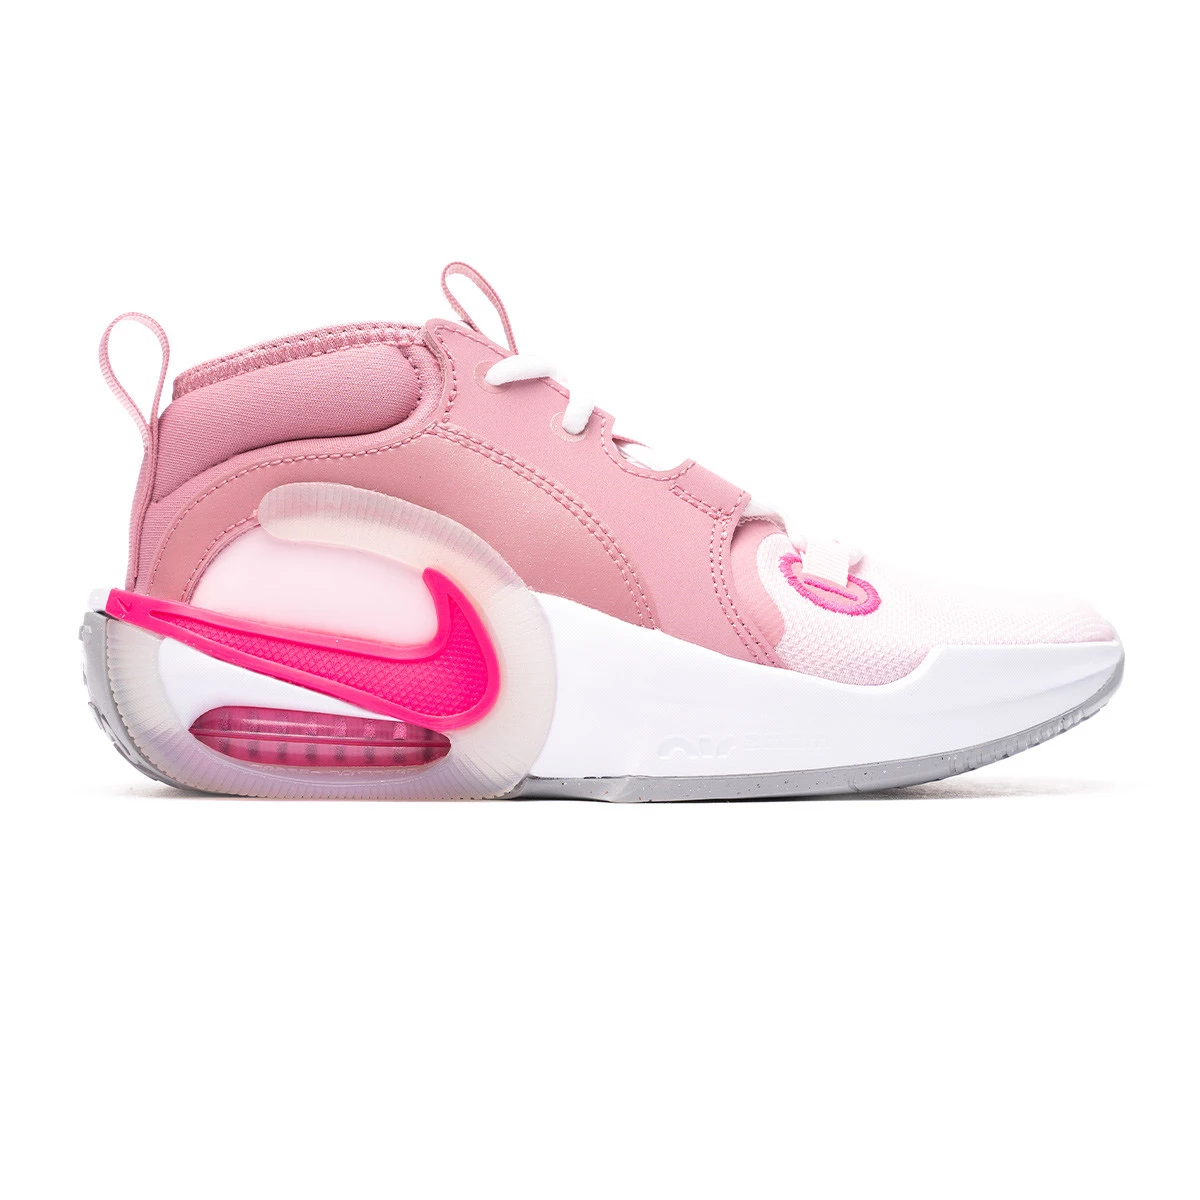 Nike air zoom crossover rosas zapatillas de baloncesto